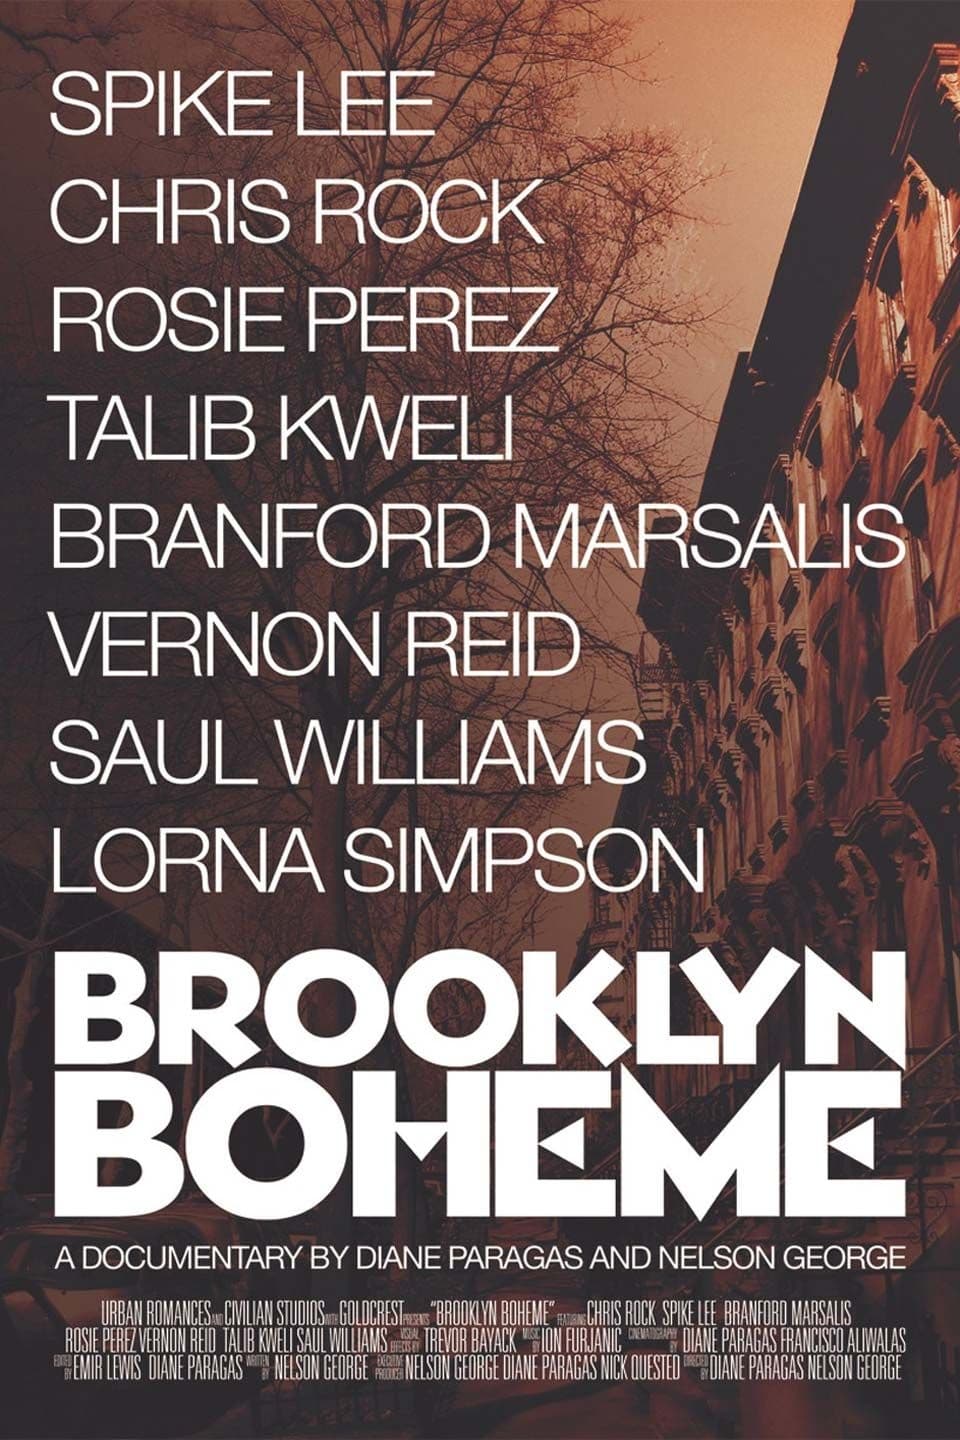 Brooklyn Boheme